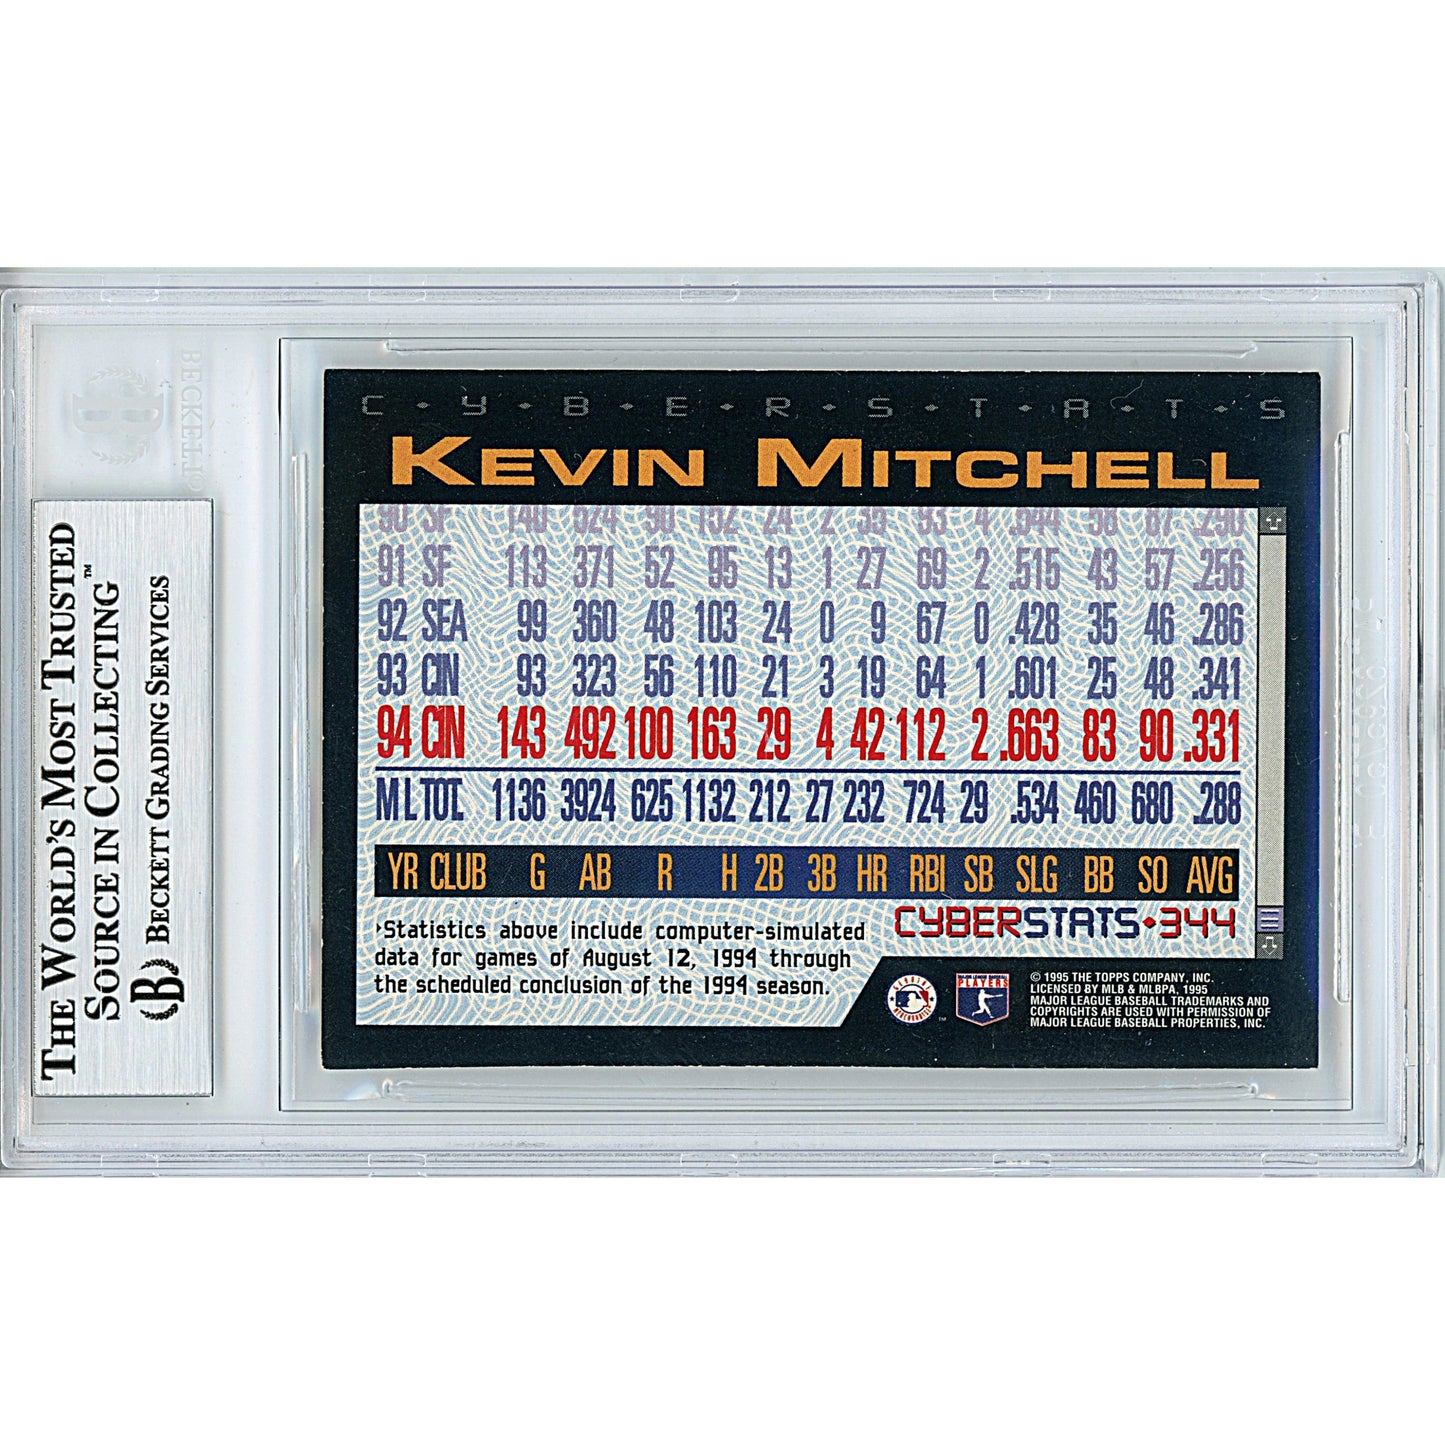 Baseballs- Autographed- Kevin Mitchell Signed Cincinnati Reds 1995 Topps Cyberstats Insert Baseball Card Beckett BAS Slabbed 00013191311 - 102